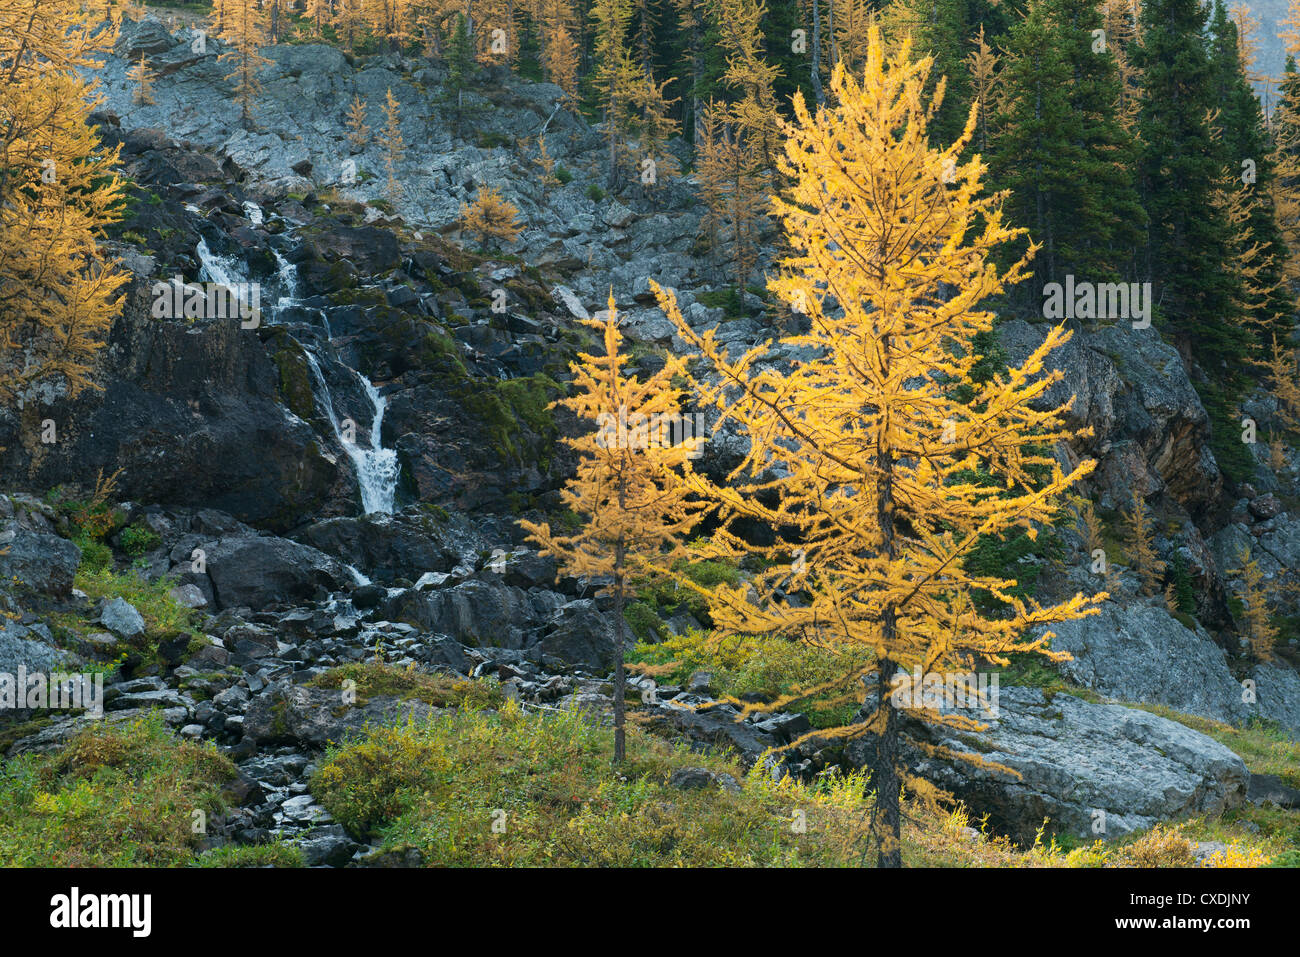 Le mélèze de l'Ouest (Larix occidentalis) , Mt. Rivière Assiniboine Provincial Park, British Columbia, Canada Septembre Banque D'Images